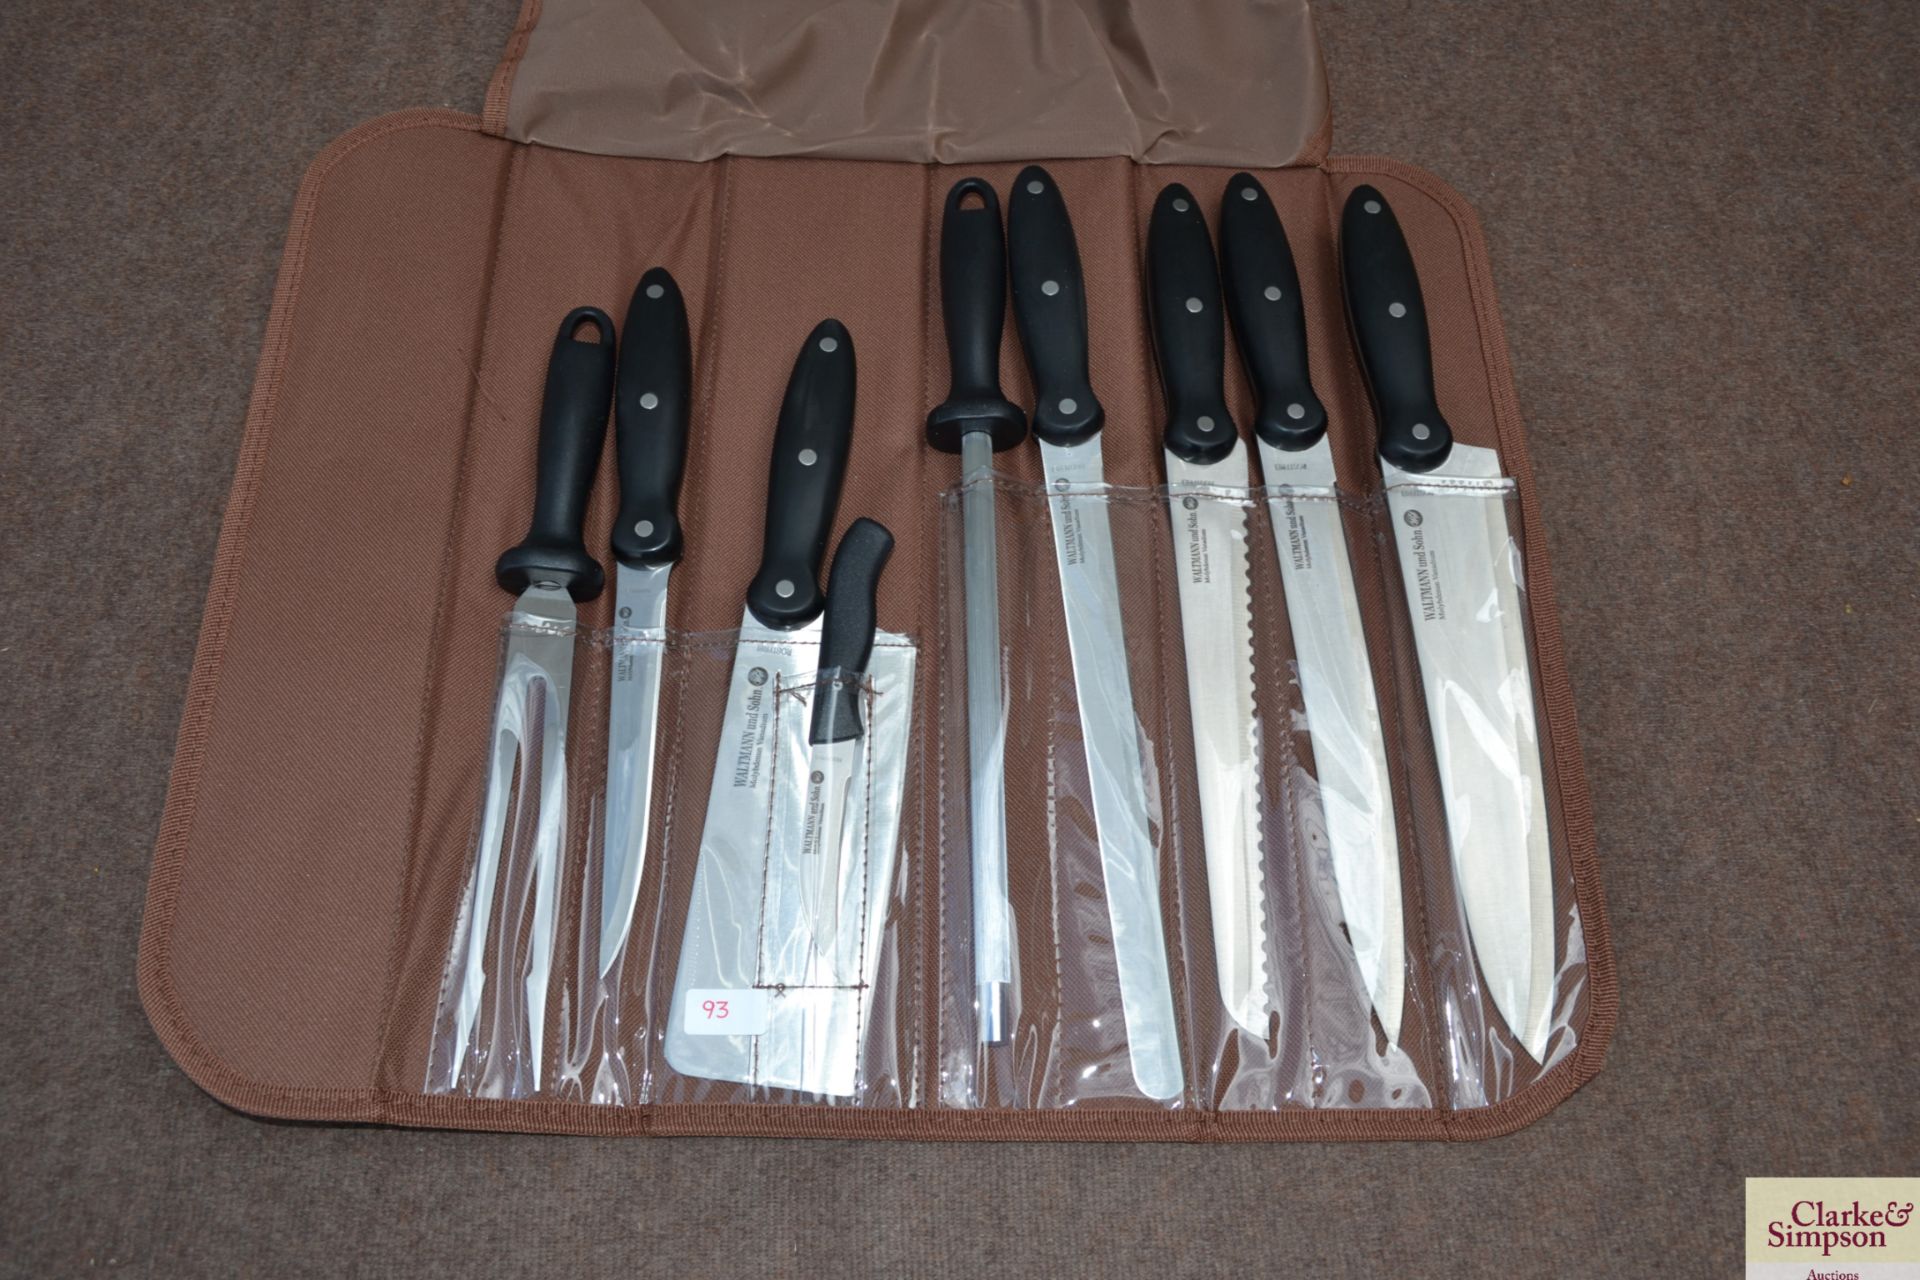 9 piece knife set in bag. V